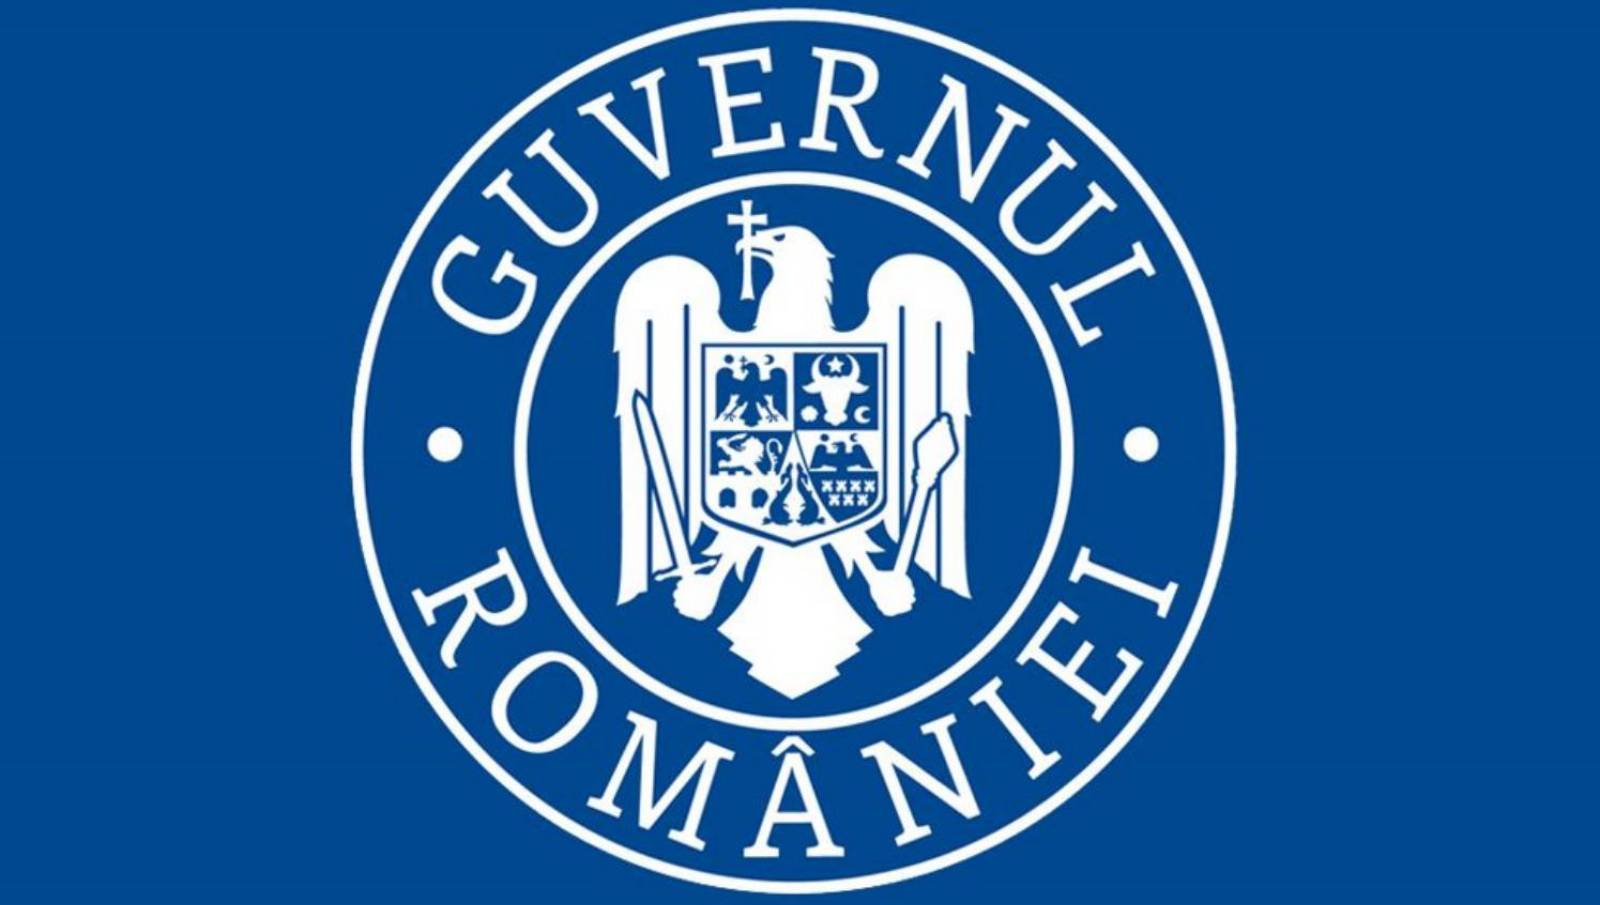 De Roemeense regering verbood bruiloften, doopfeesten en heropende restaurants